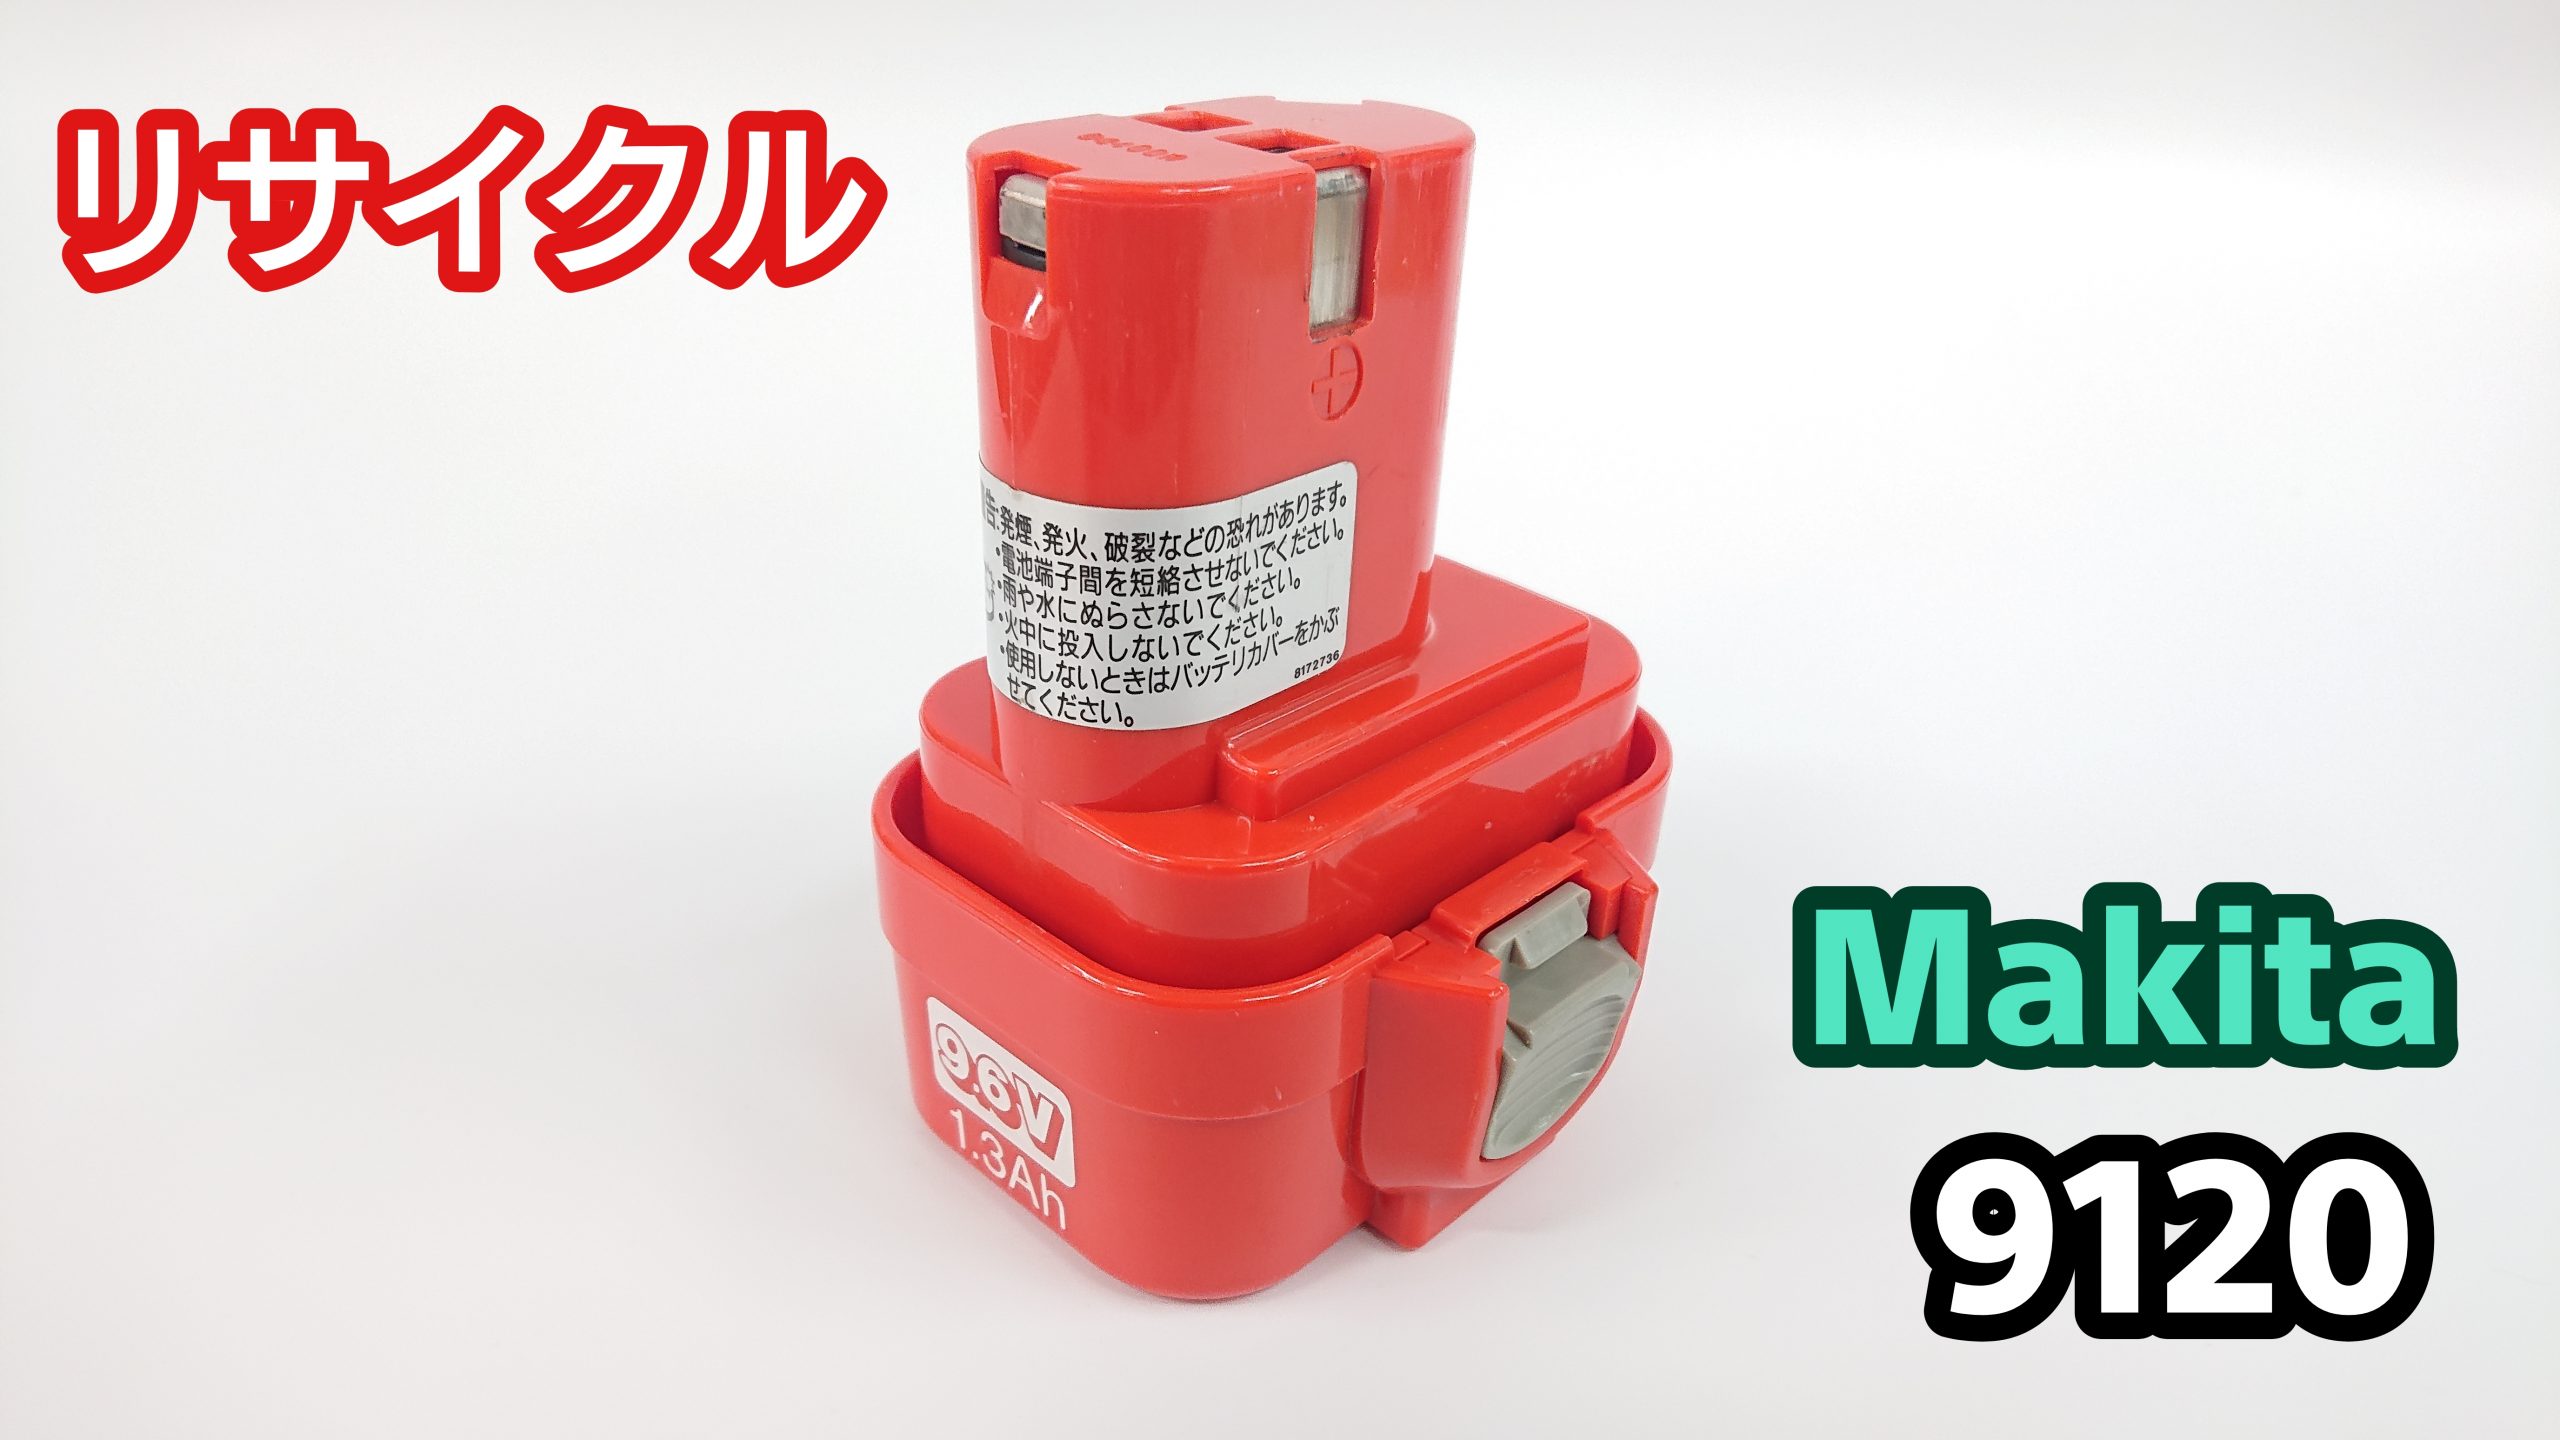 makita マキタ 9120 9122対応互換バッテリー 2000mAh